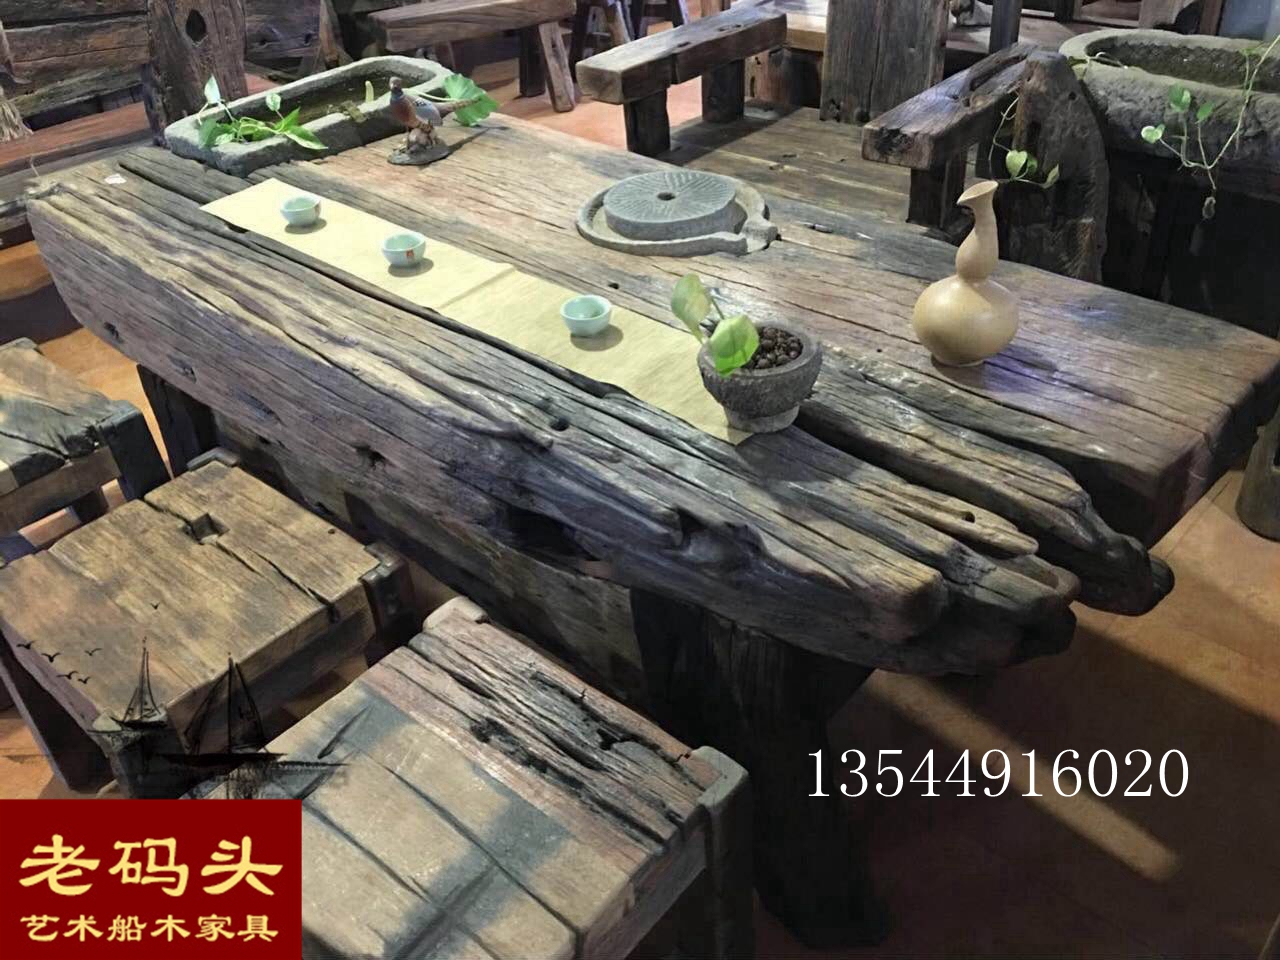 船木越沧桑越值钱船木百年烂木头成武汉古玩城的宝